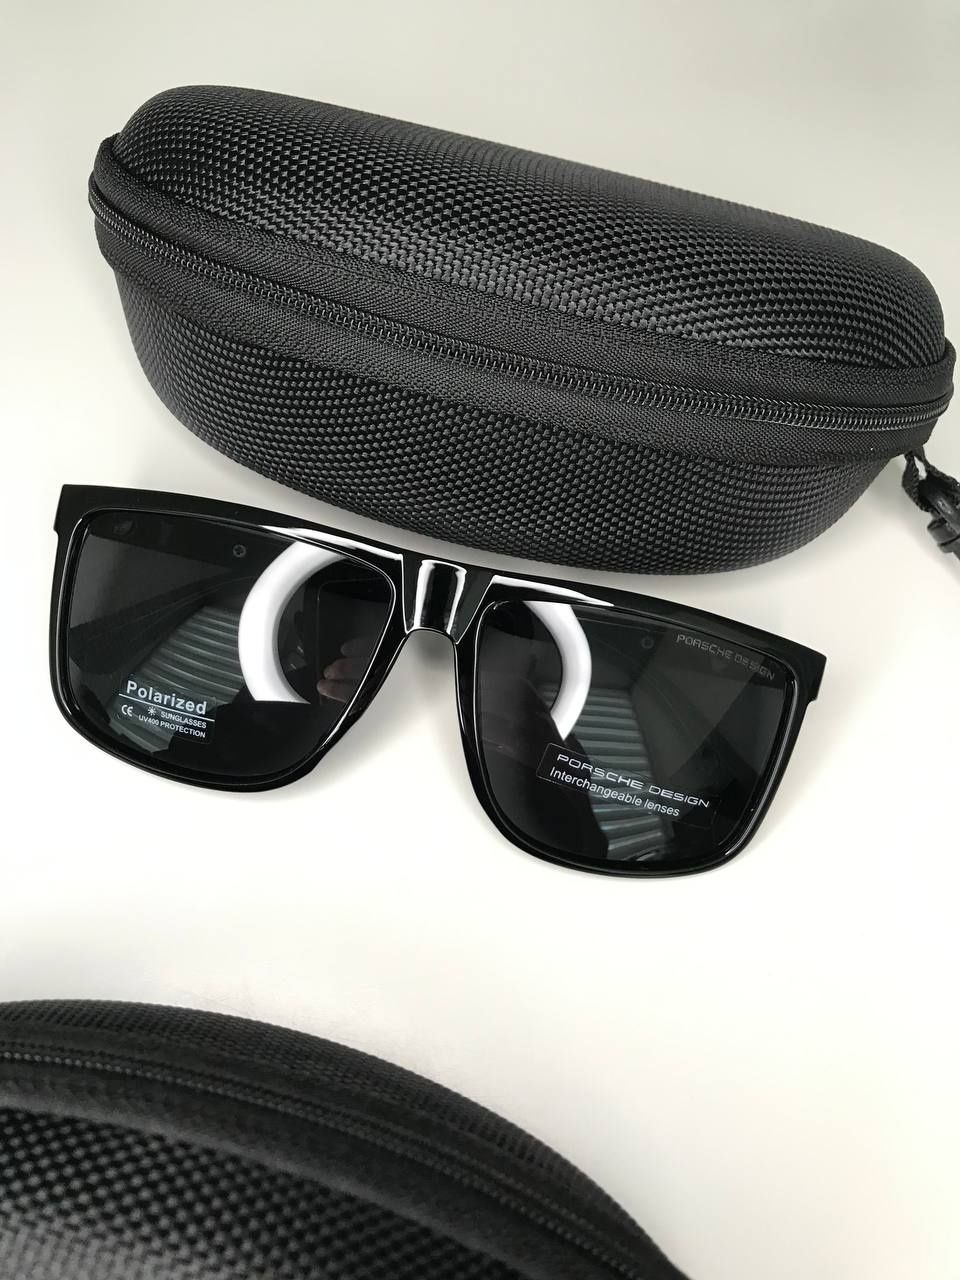 Мужские солнцезащитные очки Porsche design Polarized черные глянцевые